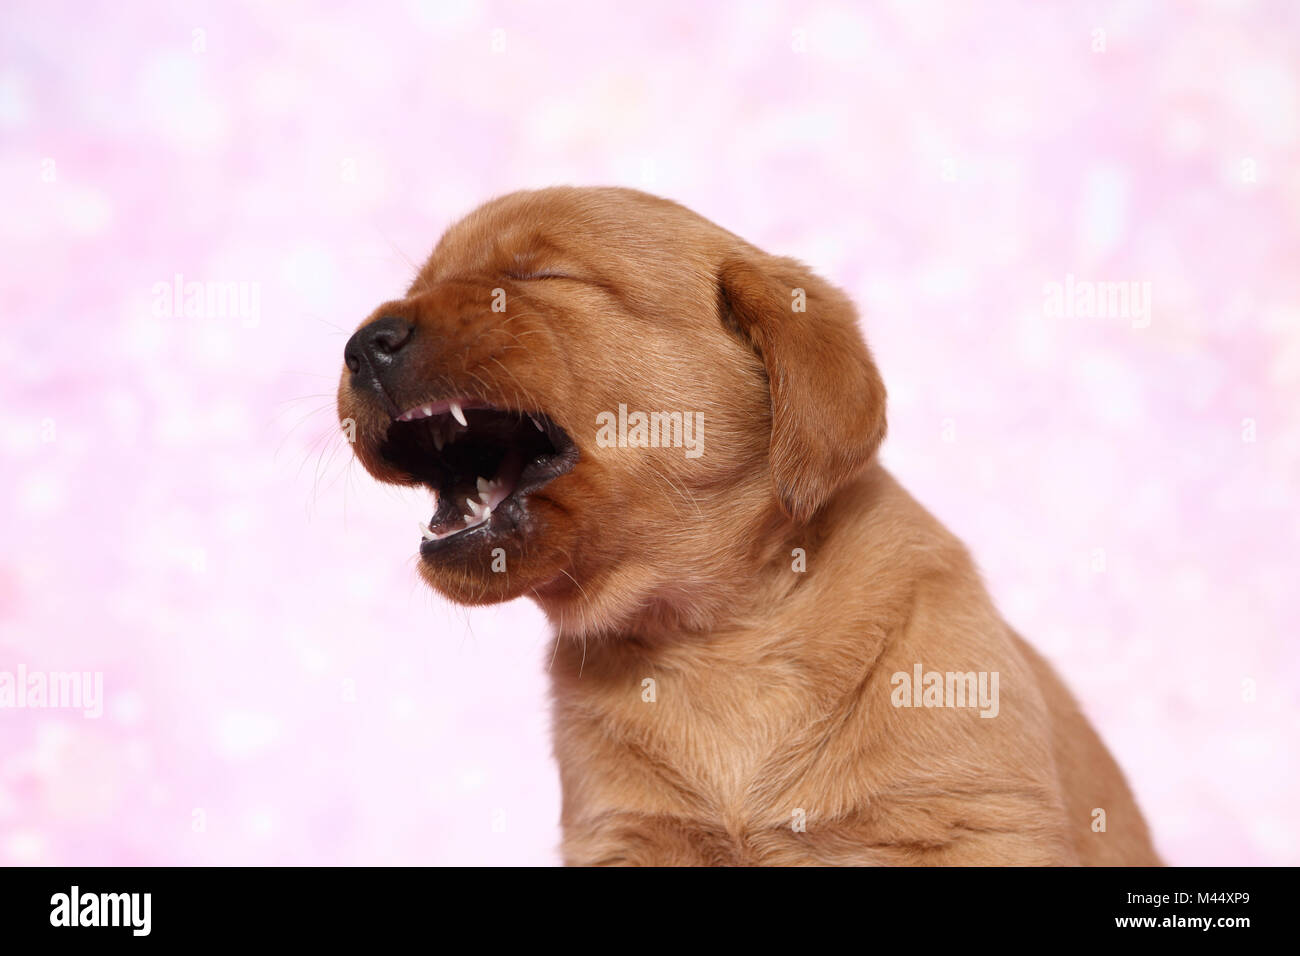 Labrador Retriever. Portrait d'un chiot (6 semaines), le bâillement. Studio photo sur un fond rose. Allemagne Banque D'Images